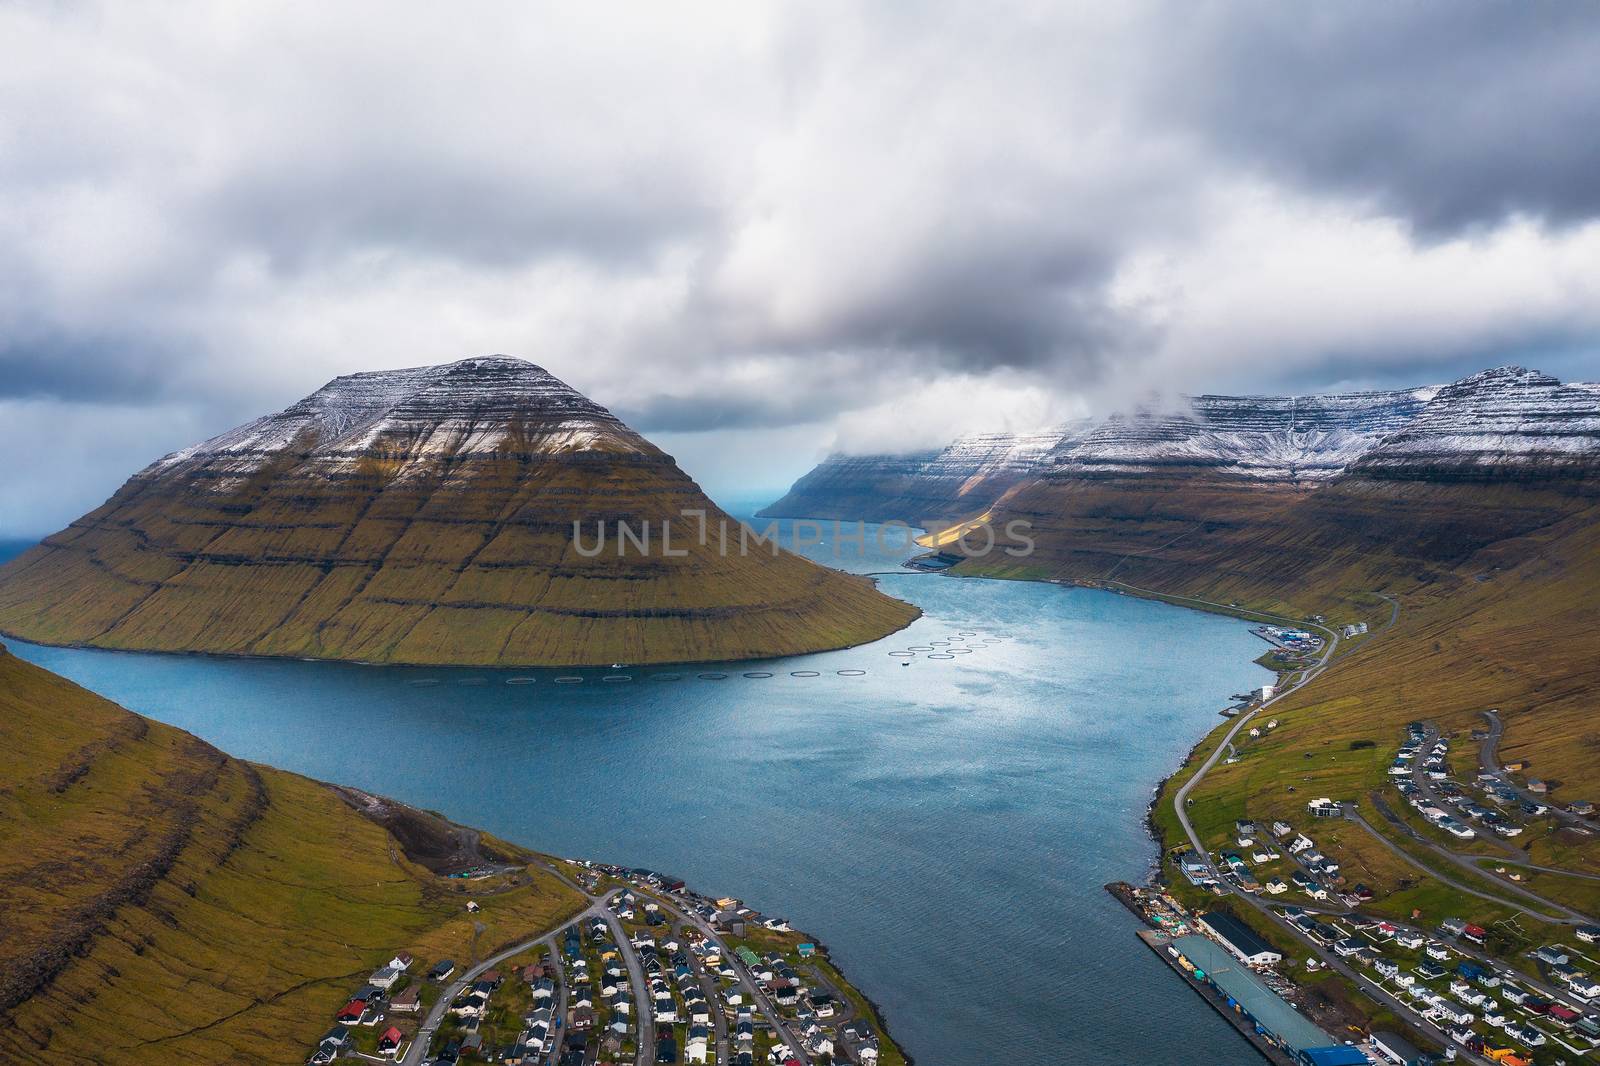 Aerial view of the city of Klaksvik on Faroe Islands, Denmark by nickfox